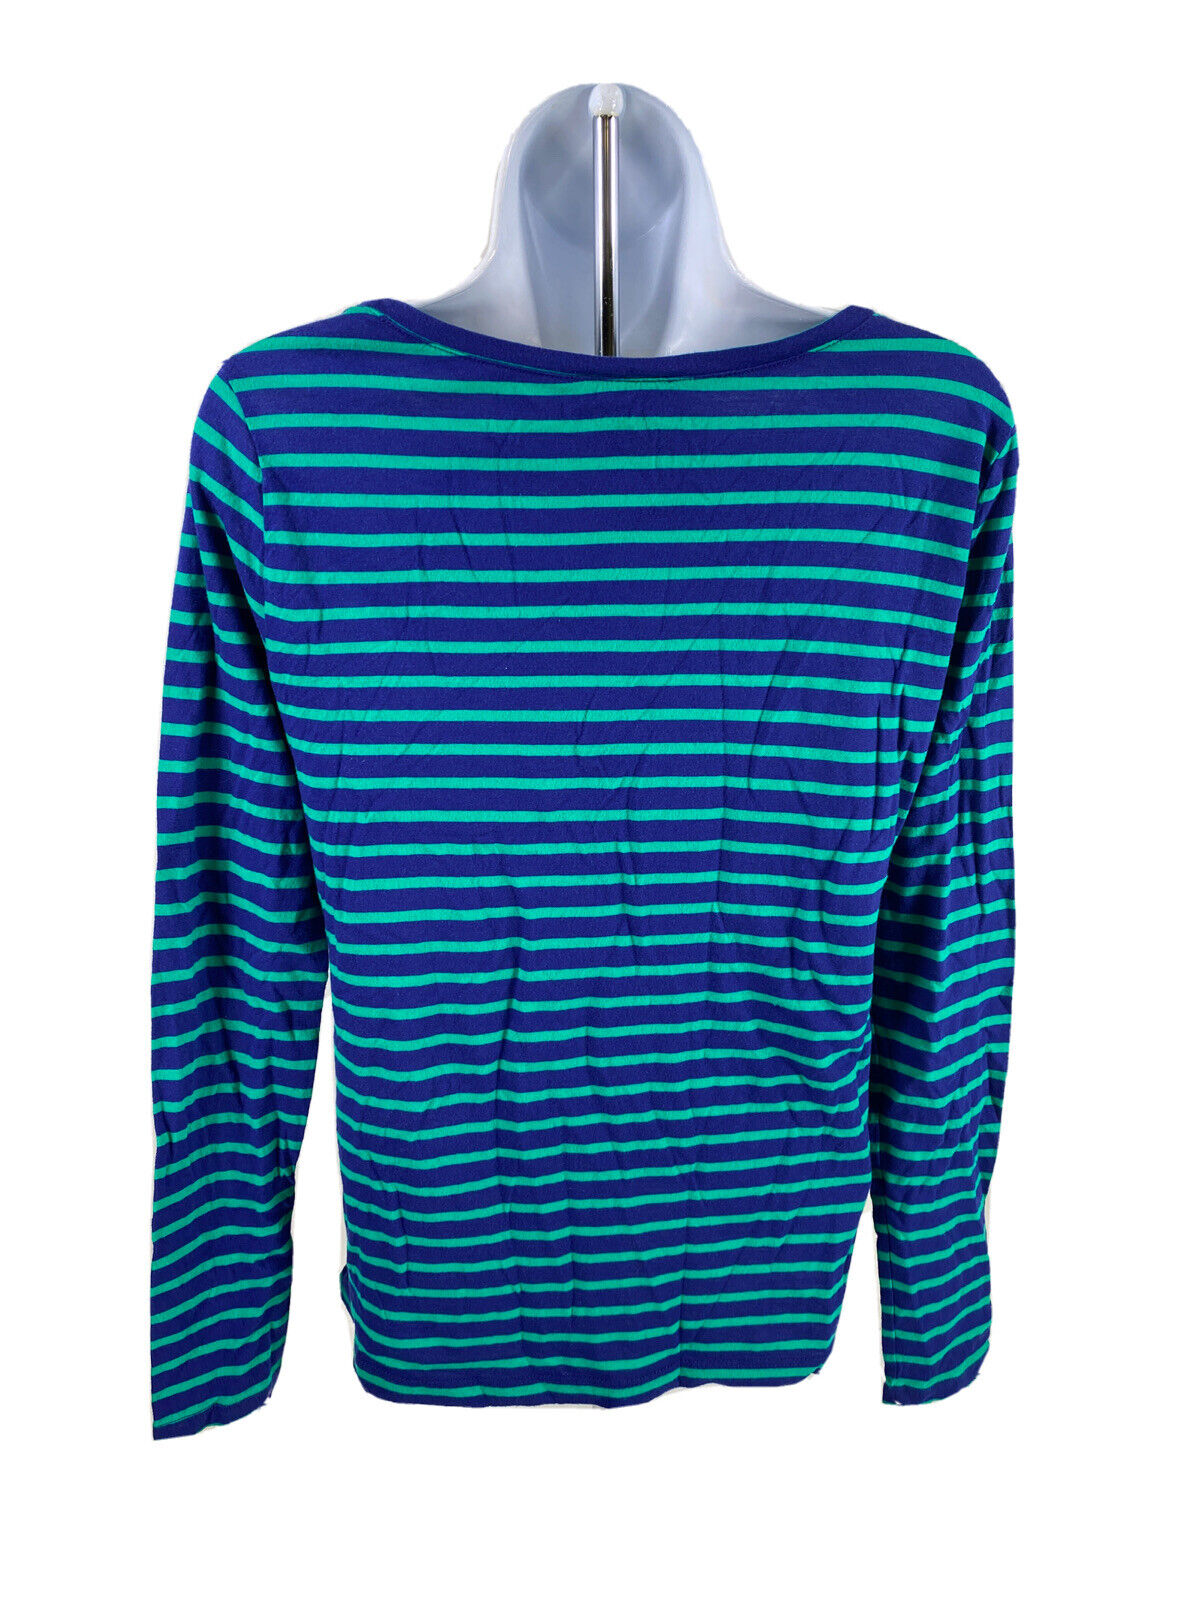 LOFT Women's Blue/Green Striped Long Sleeve T-Shirt - S